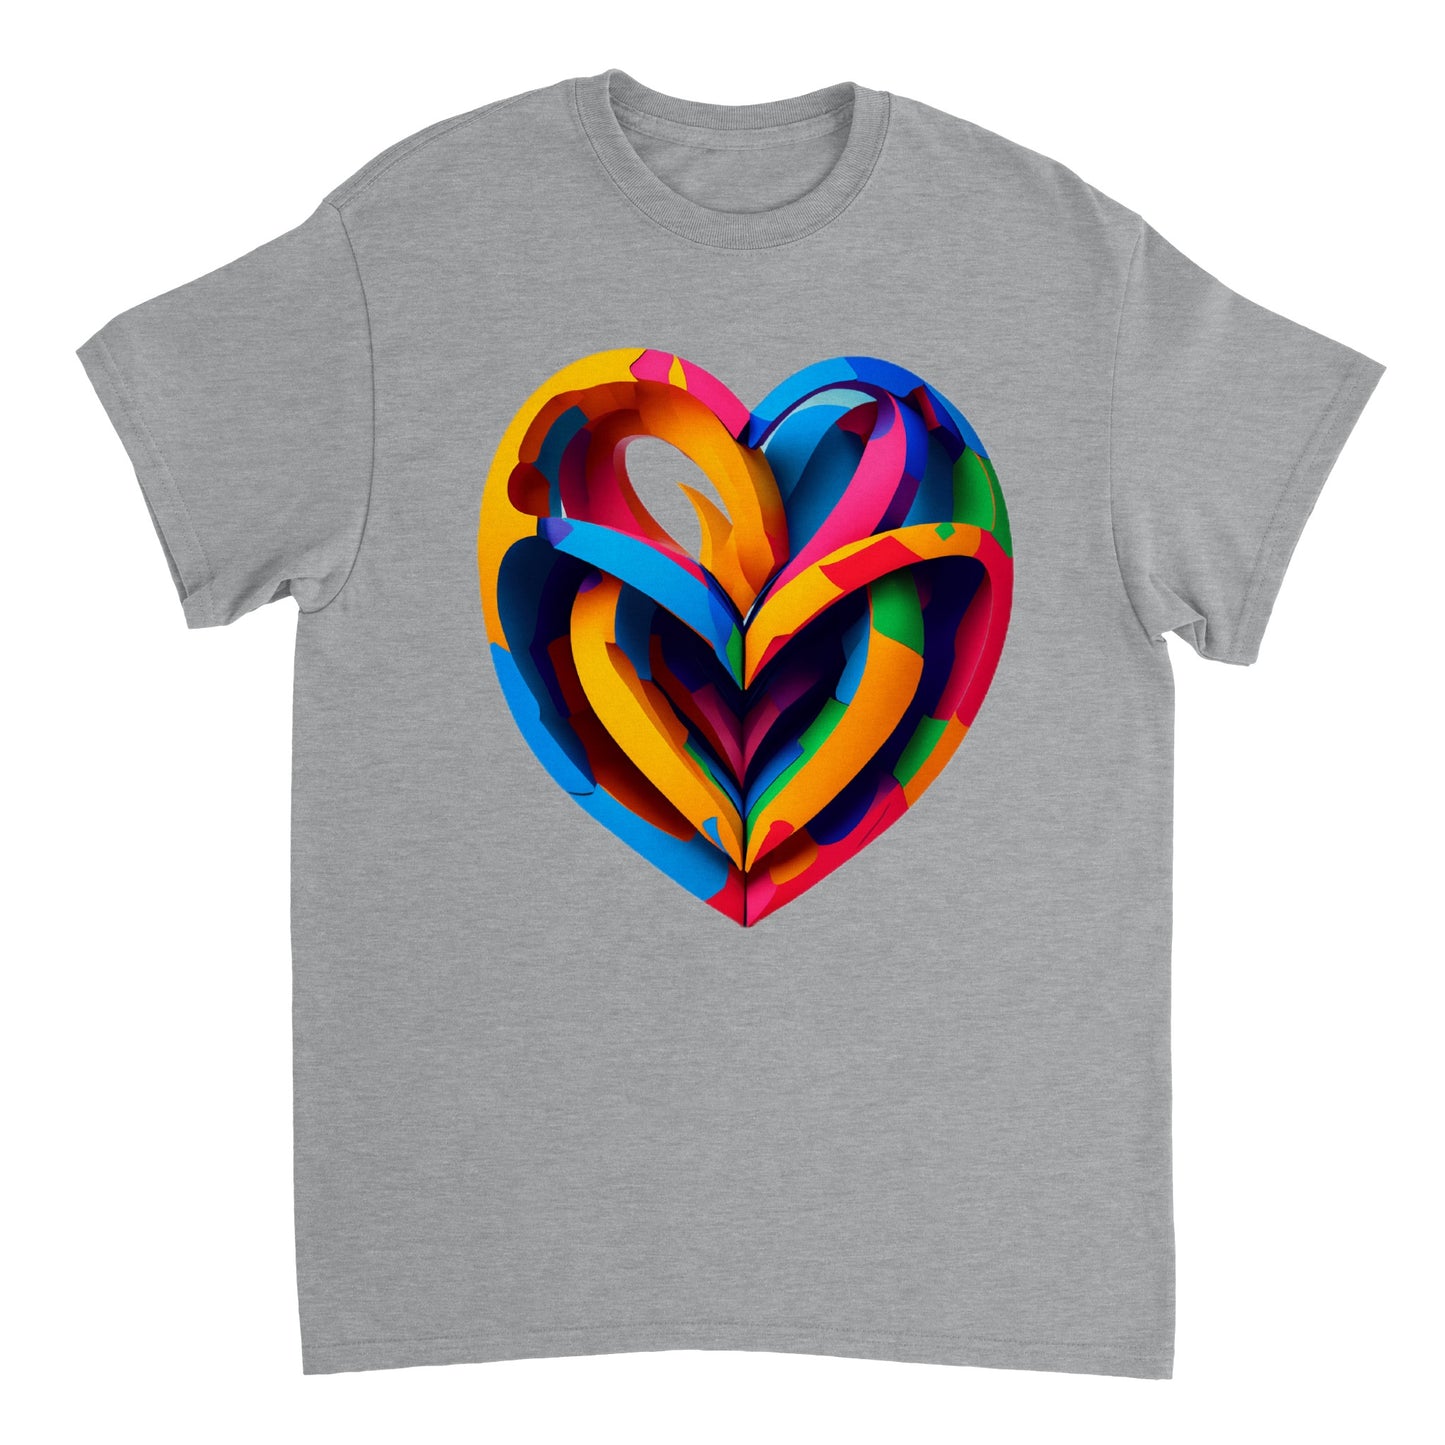 Love Heart - Heavyweight Unisex Crewneck T-shirt 24